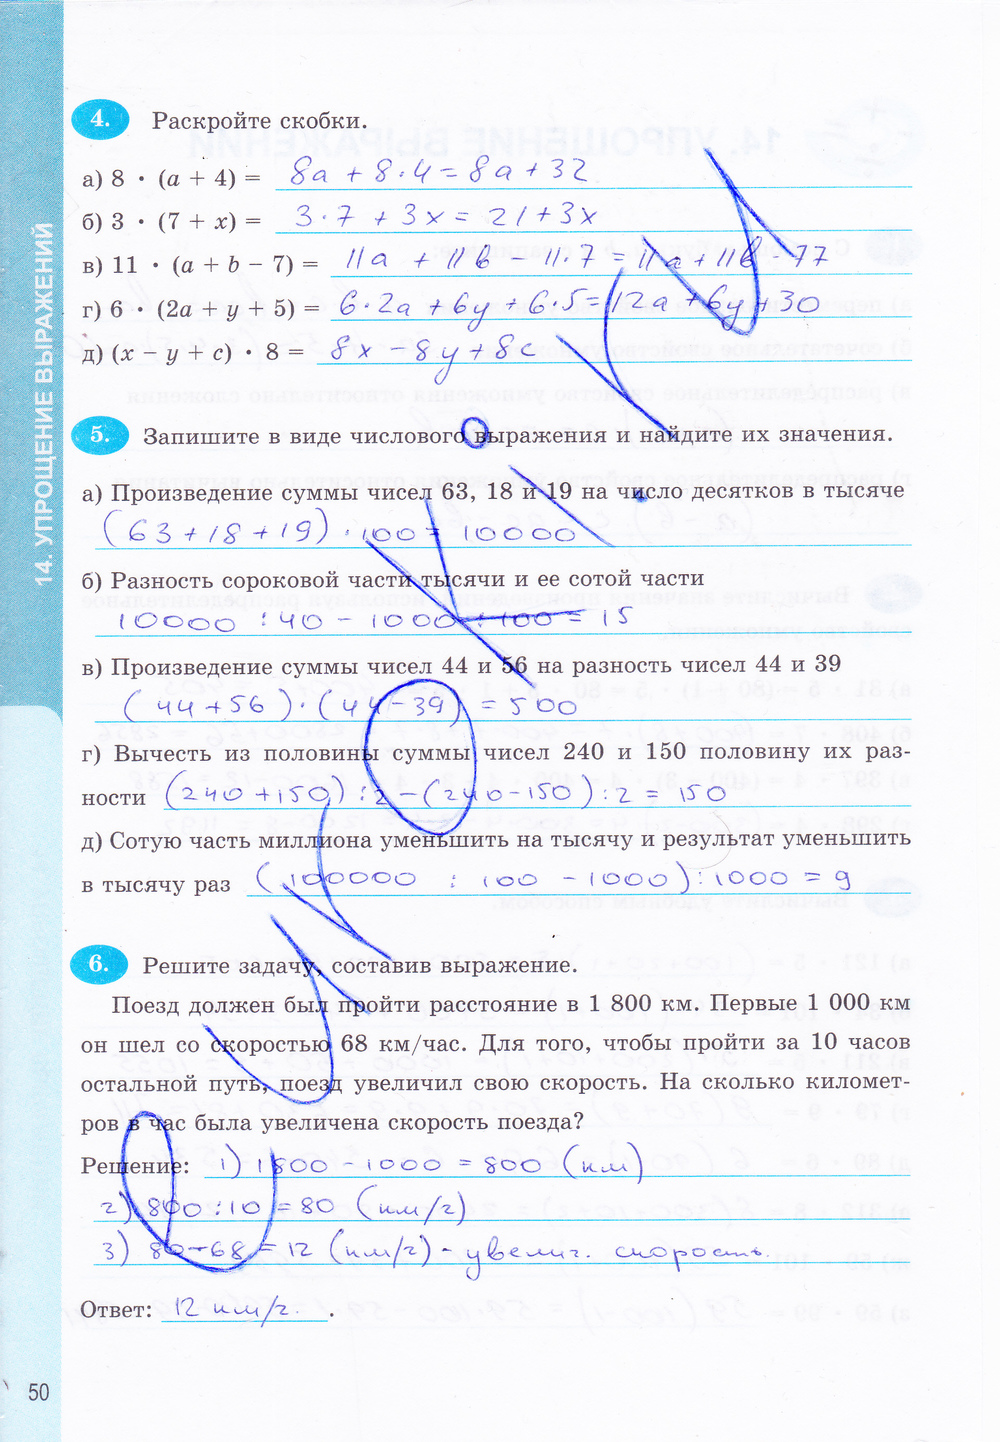 Гдз по математике 5 класс мнемозина 2018 11-е издание мордокович зуборева